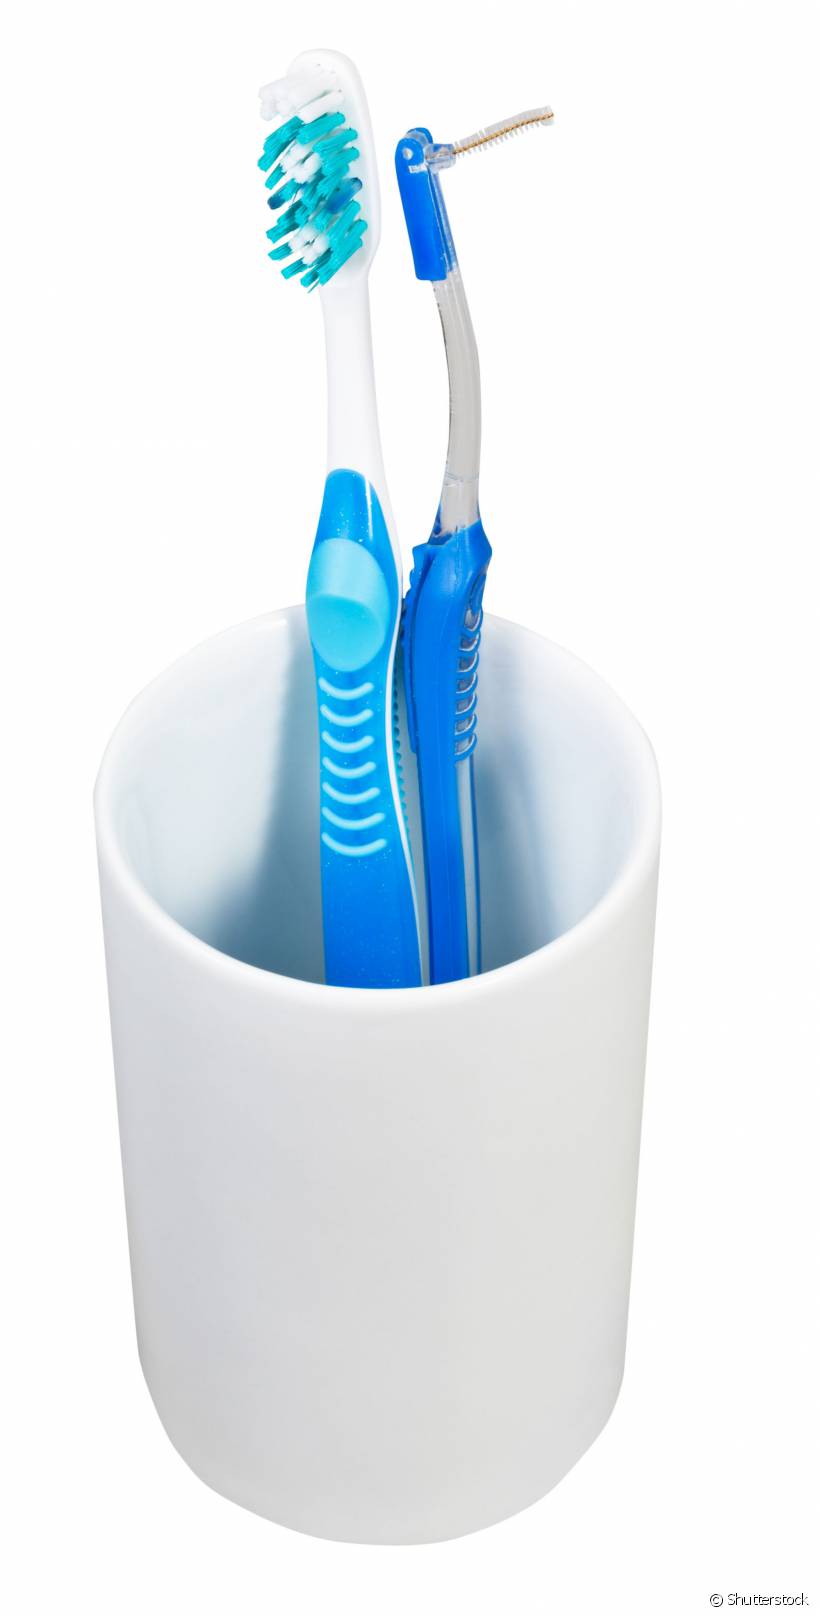 A escova ortodôntica higieniza os dentes já que se adequada para adaptação aos braquetes. A interdental é indicada para a limpeza de que possui espaços entre os dentes